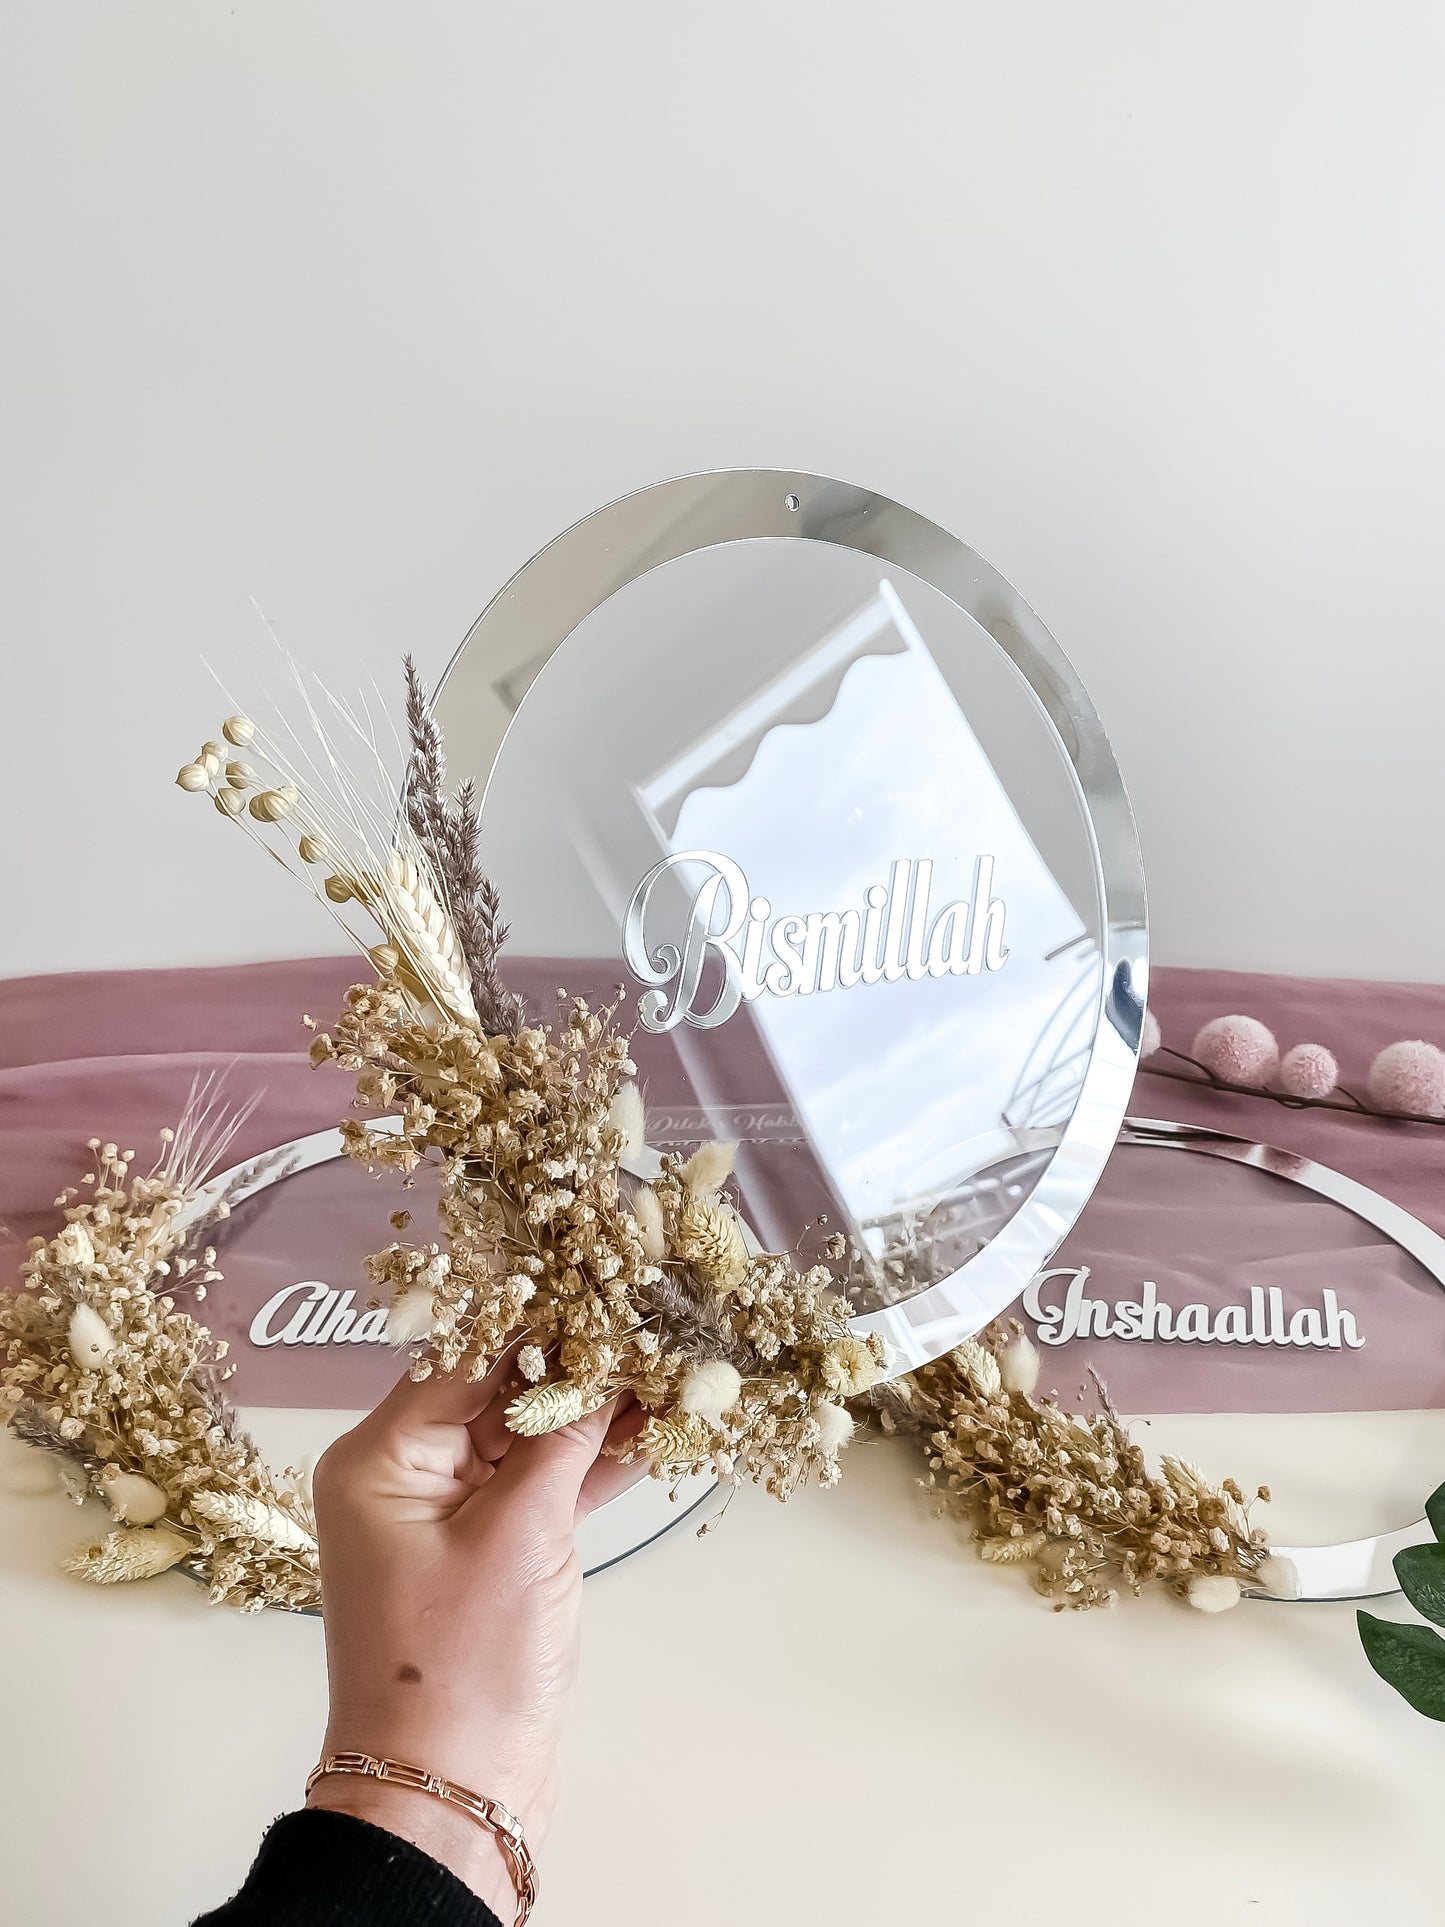 Dua 3'er Set Wand-Deko - Inshaallah, Bismillah, Alhamdulillah - Ring mit Blumen